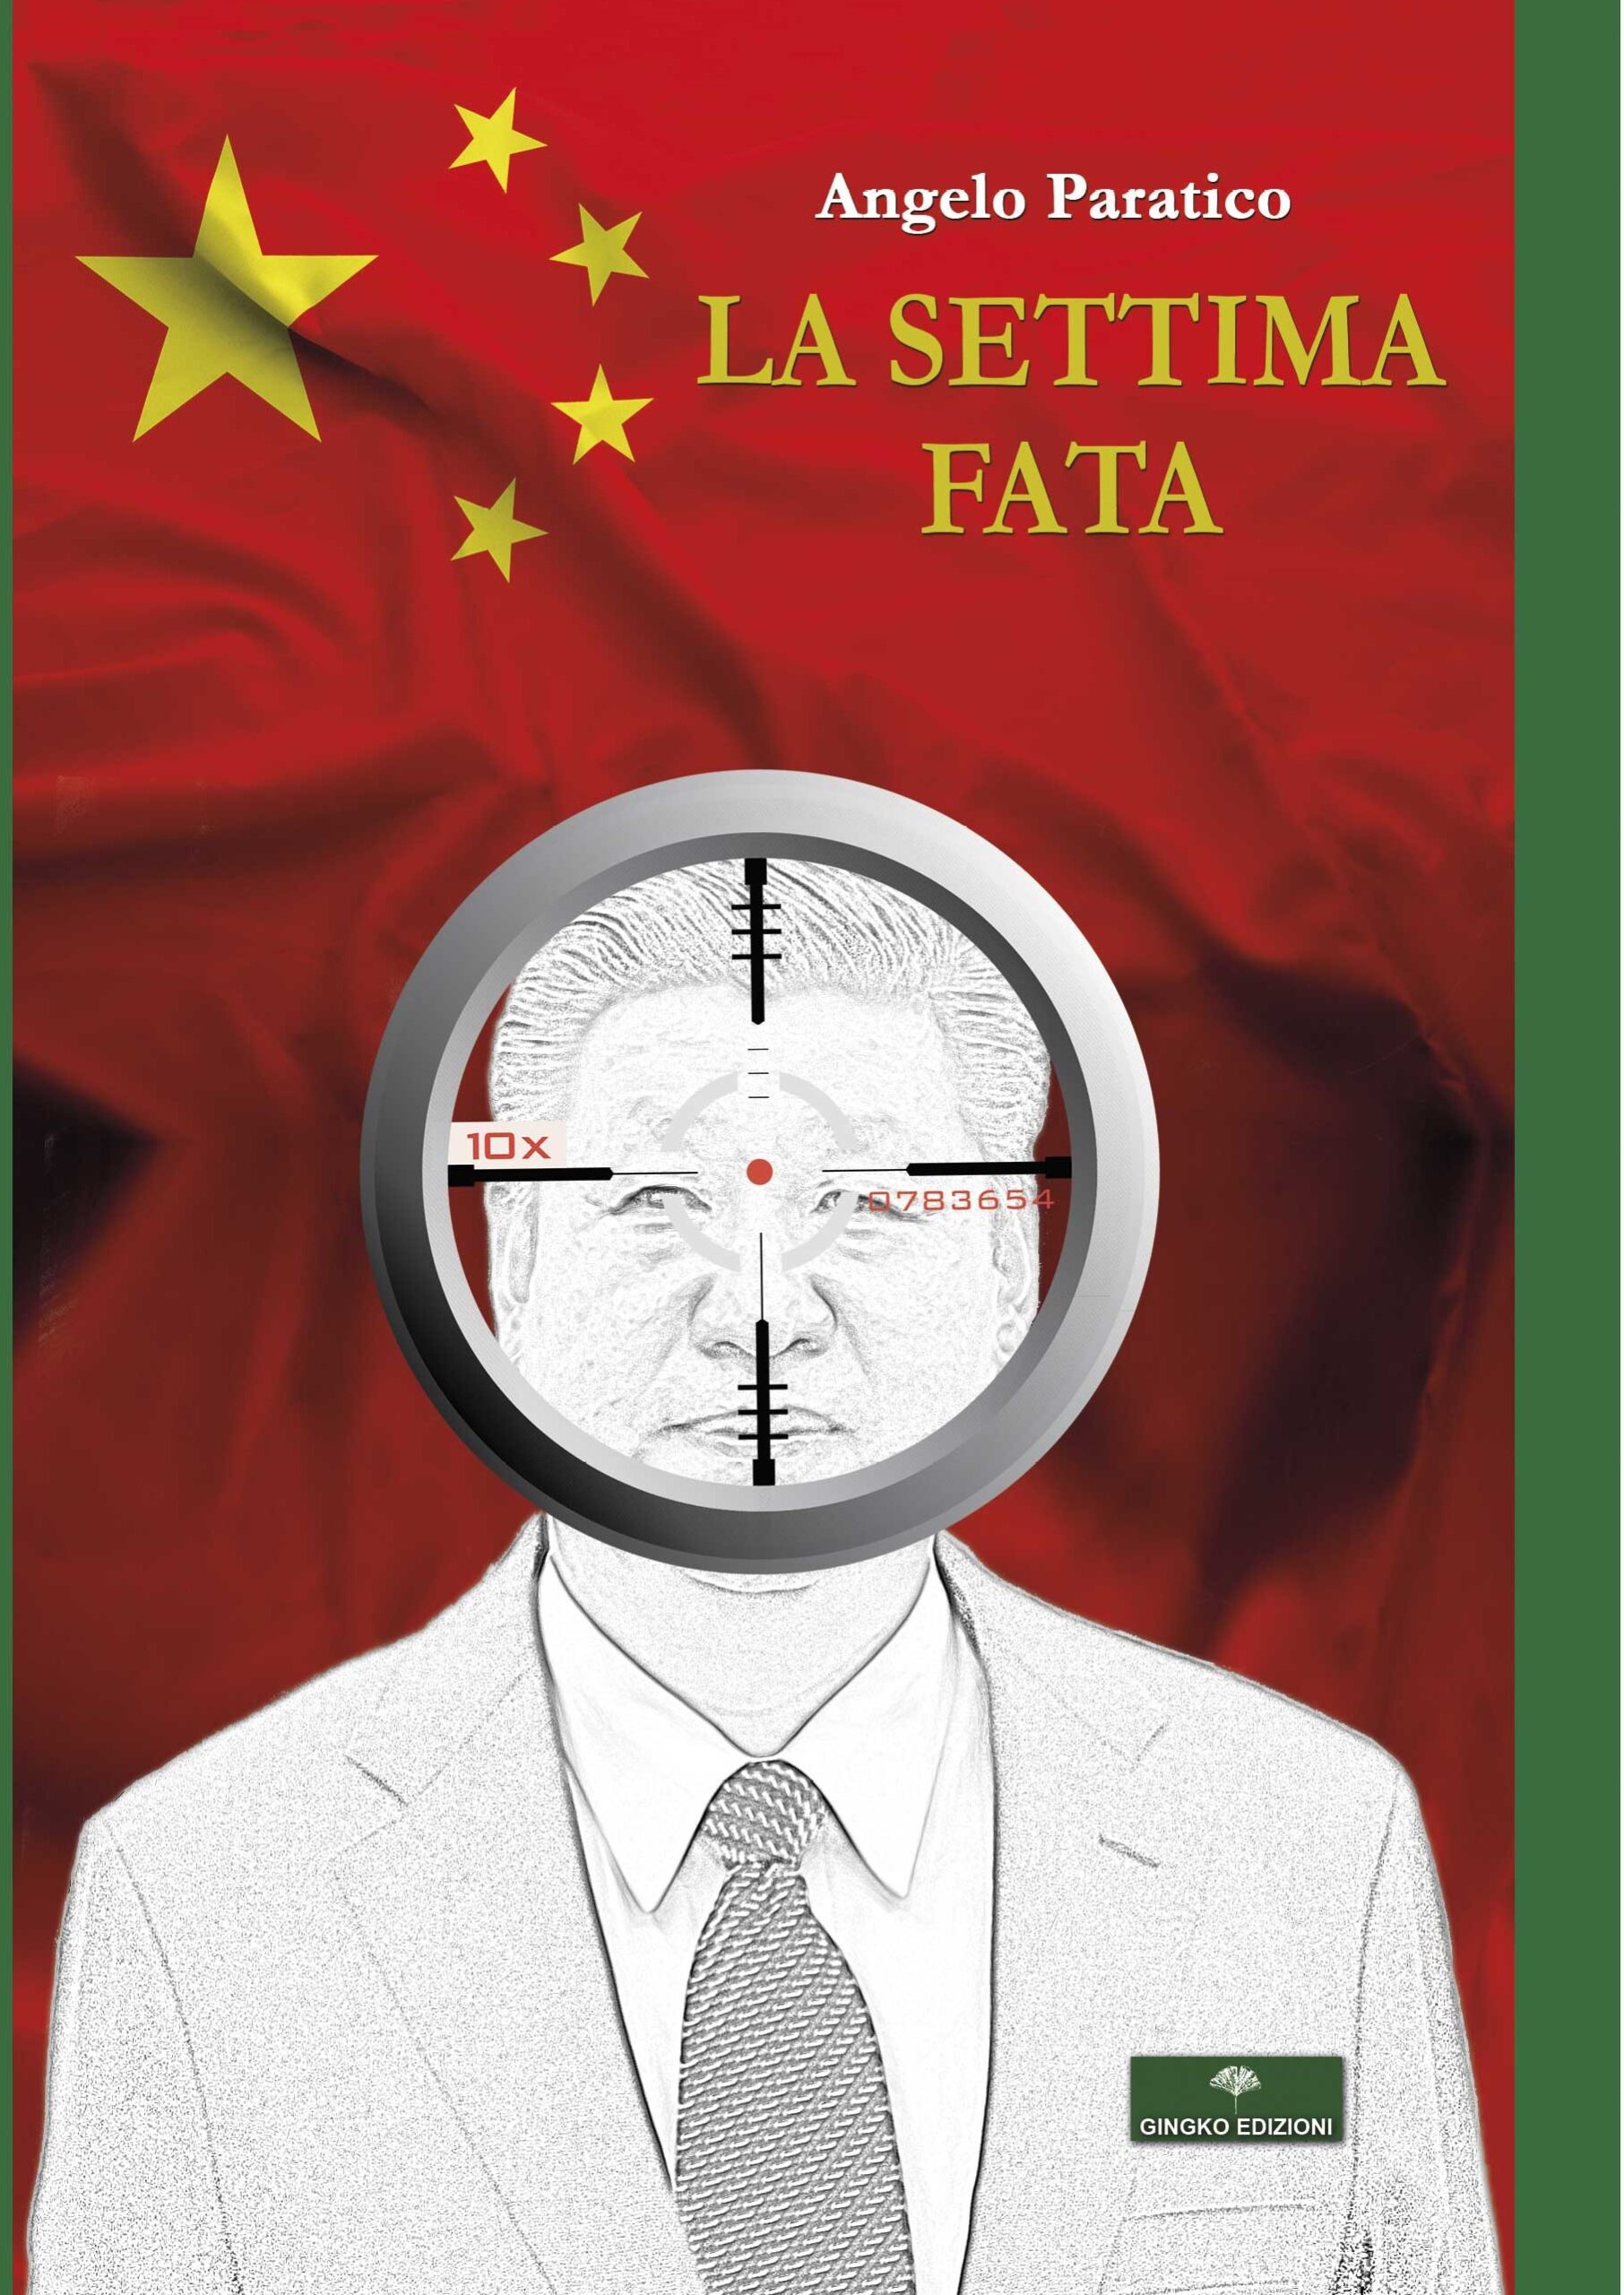 Angelo Paratico premiato per “La Settima Fata”, favola antica sulla Cina super-potenza globale